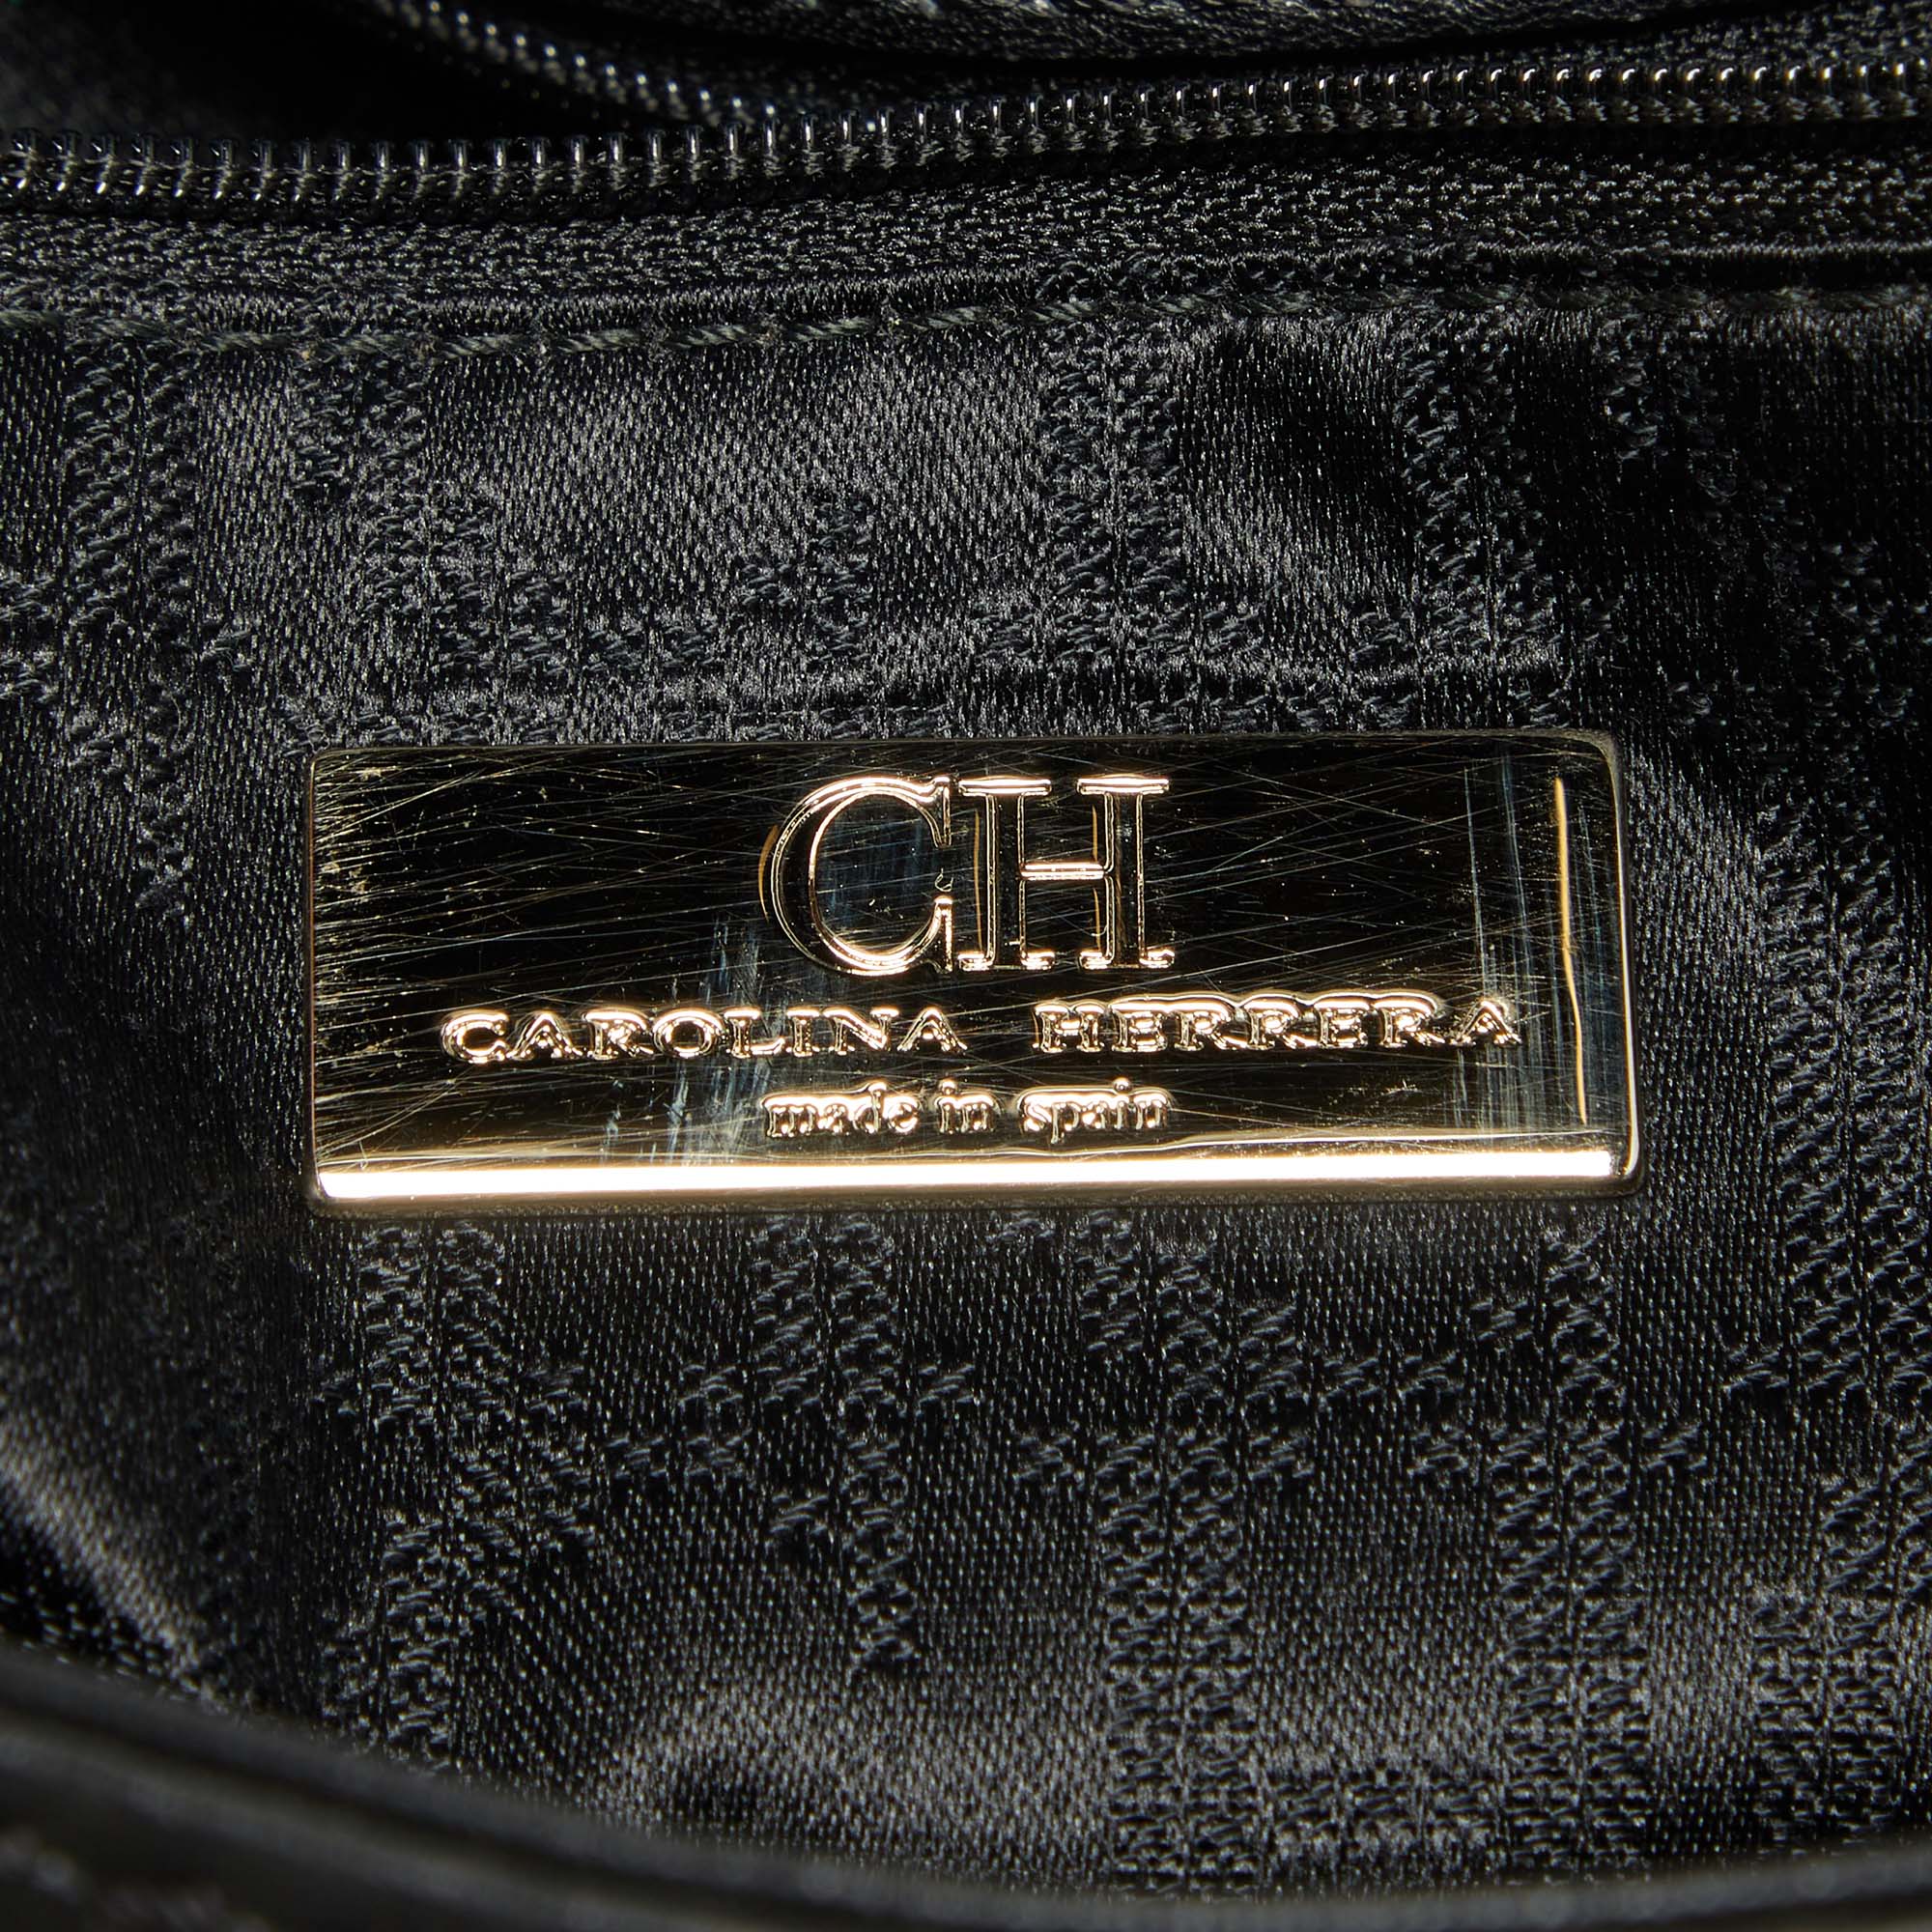 CH Carolina Herrera Black Leather Flap Shoulder Bag